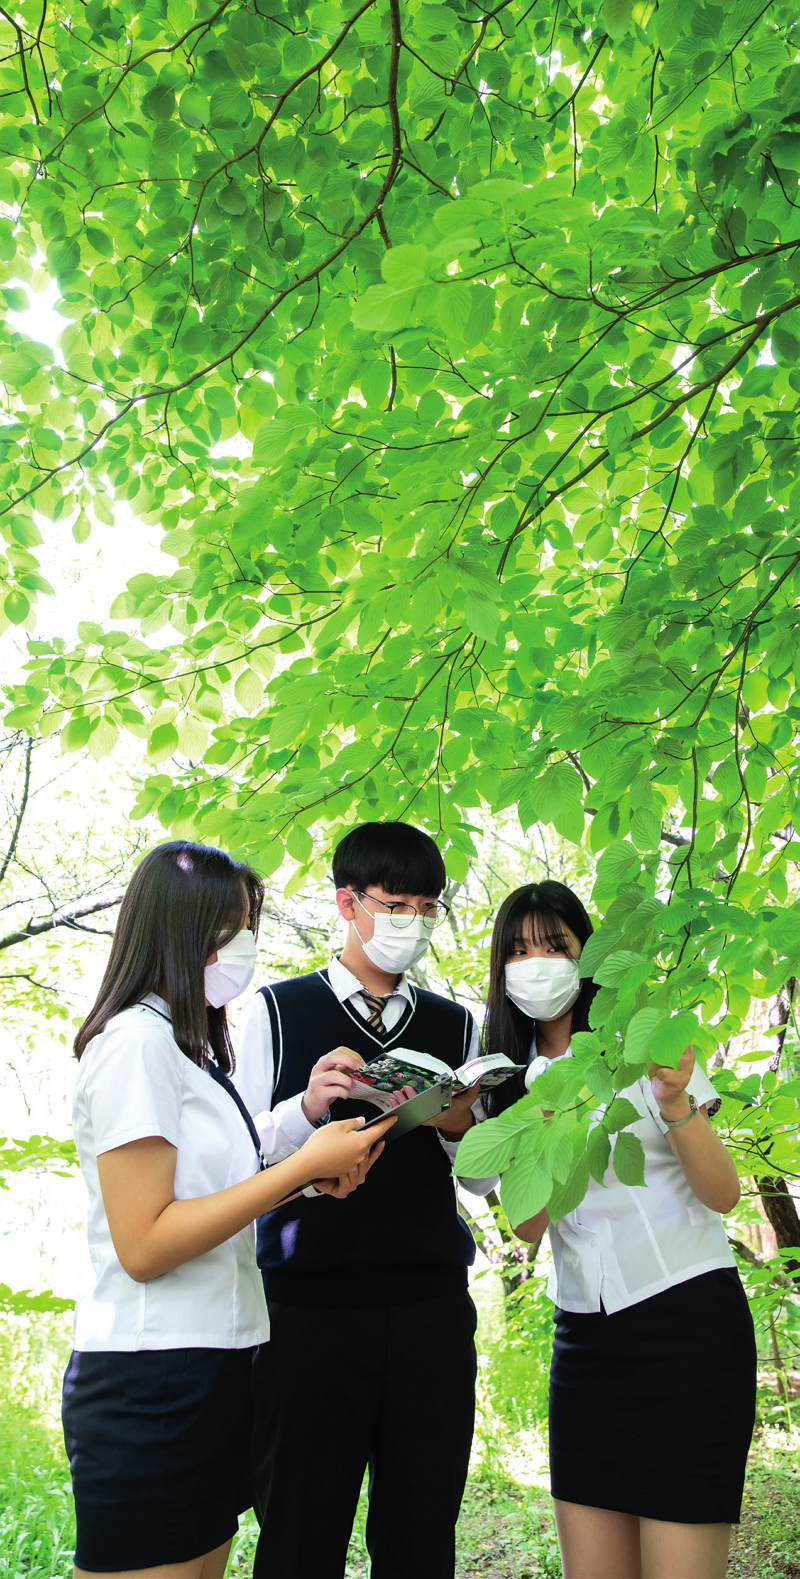 지난 5월 13일 3교시 환경수업 시간에 1학년 6반  학생들이 건물 뒤편 중정원에 모였다. 학교에 어떤  나무가 심겨 있는지 관찰하고, 나무 도감을 활용해  탐색해보는 수업이 진행됐다.